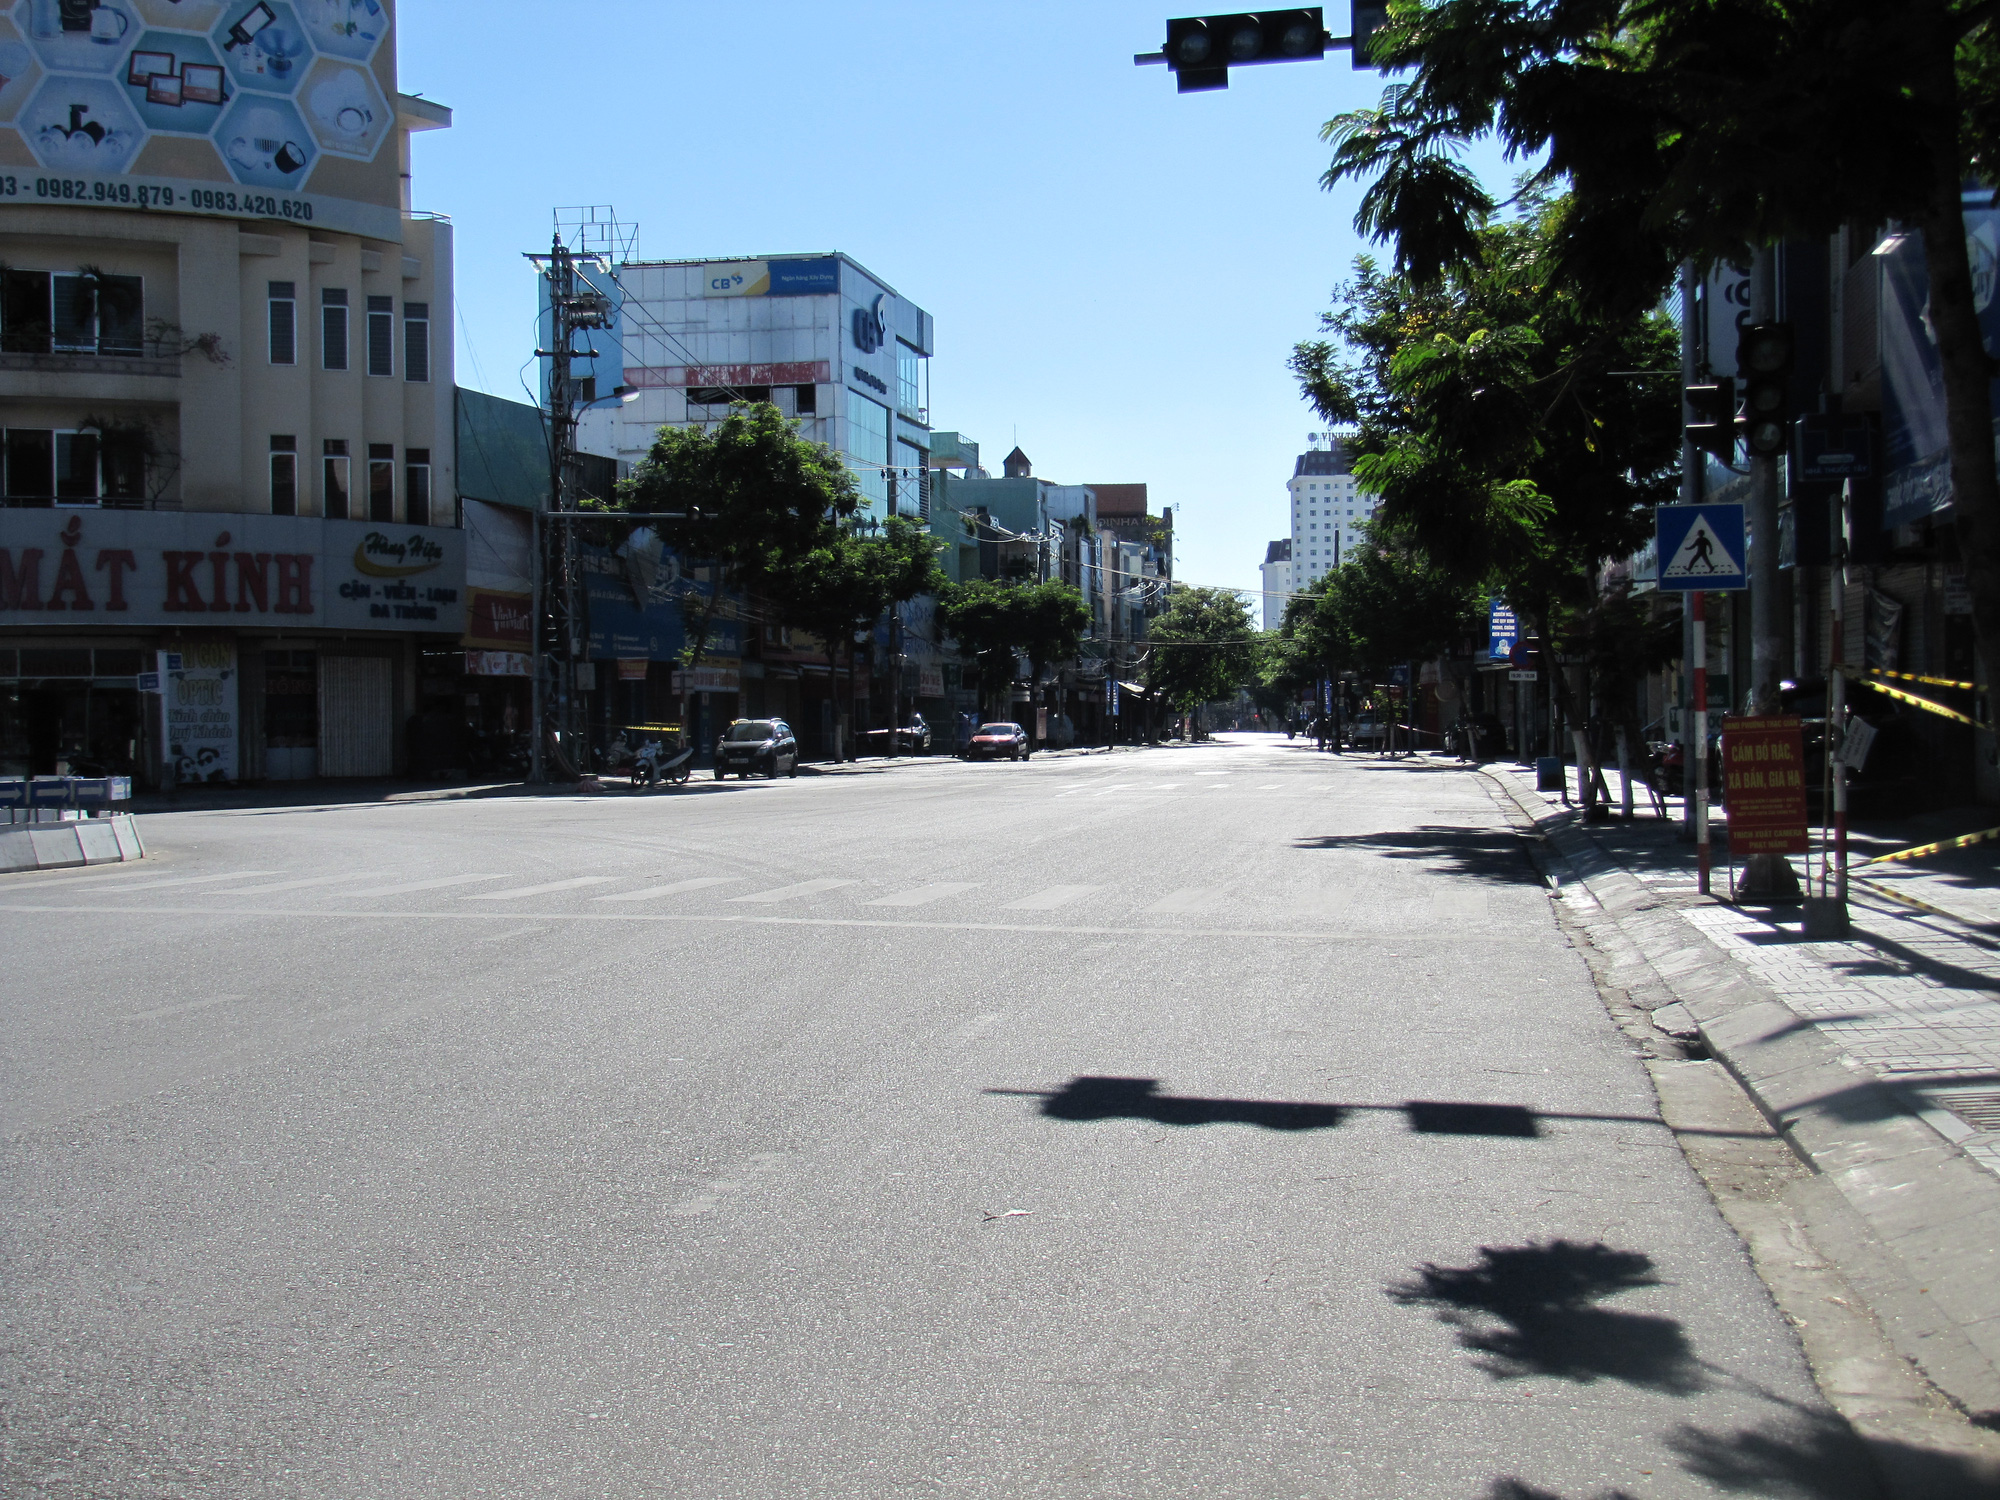 Tận hưởng không khí trong lành của Đà Nẵng trong những ngày đường phố vắng lặng. Hãy dạo bước để cảm nhận sự bình yên và thoải mái, tránh xa phẩm chất ồn ào của thành phố lớn. Nhấp vào ảnh để khám phá thêm về Đà Nẵng.